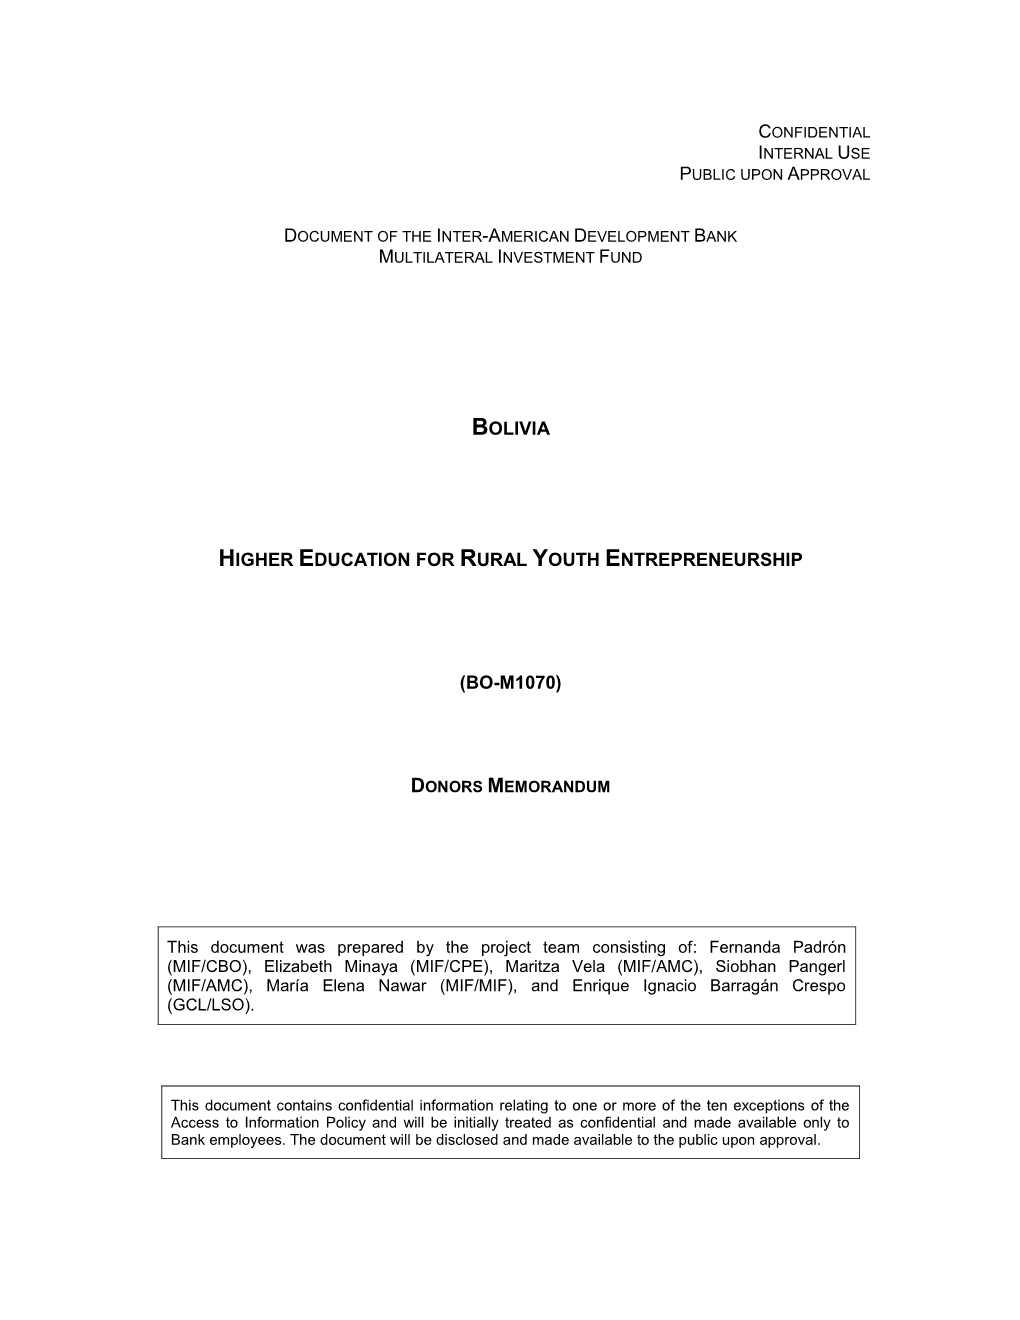 Bolivia Higher Education for Rural Youth Entrepreneurship